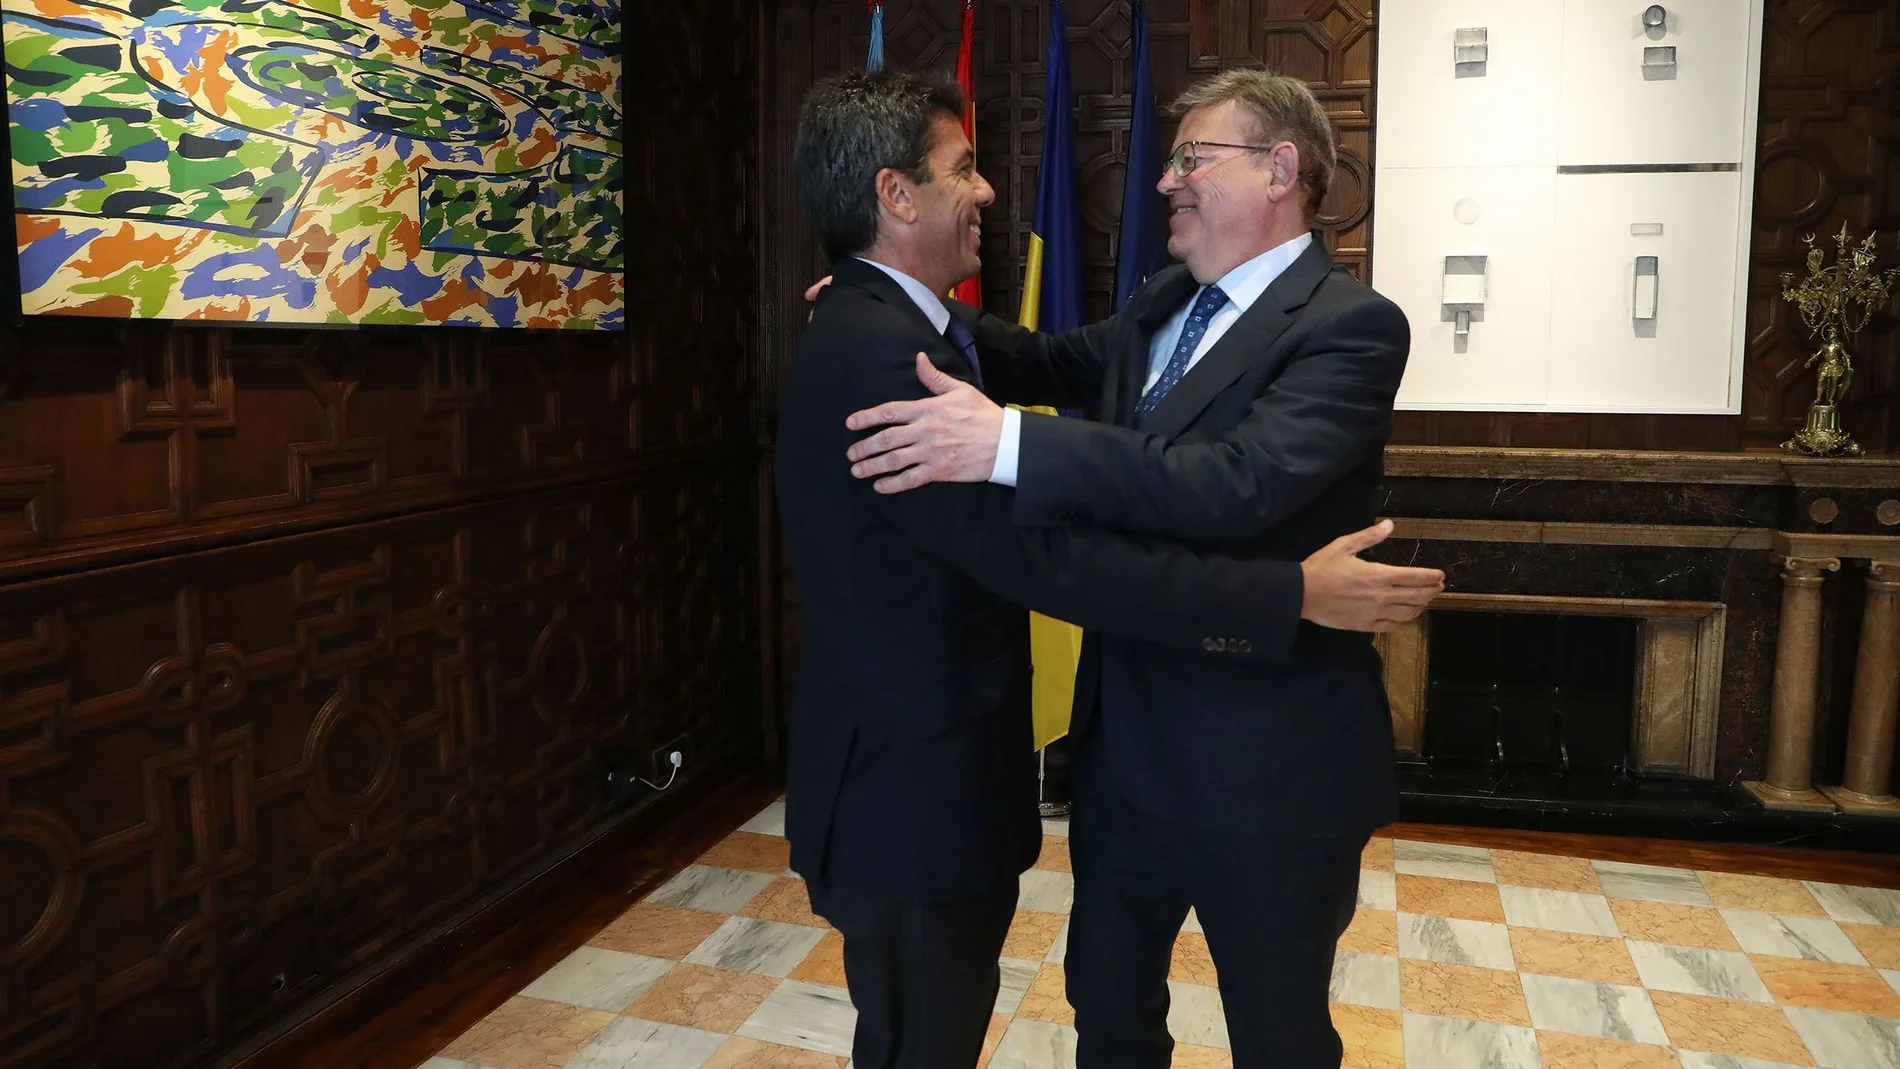 El presidente de la Generalitat saliente, Ximo Puig, saluda al futuro presidente, Carlos Mazón